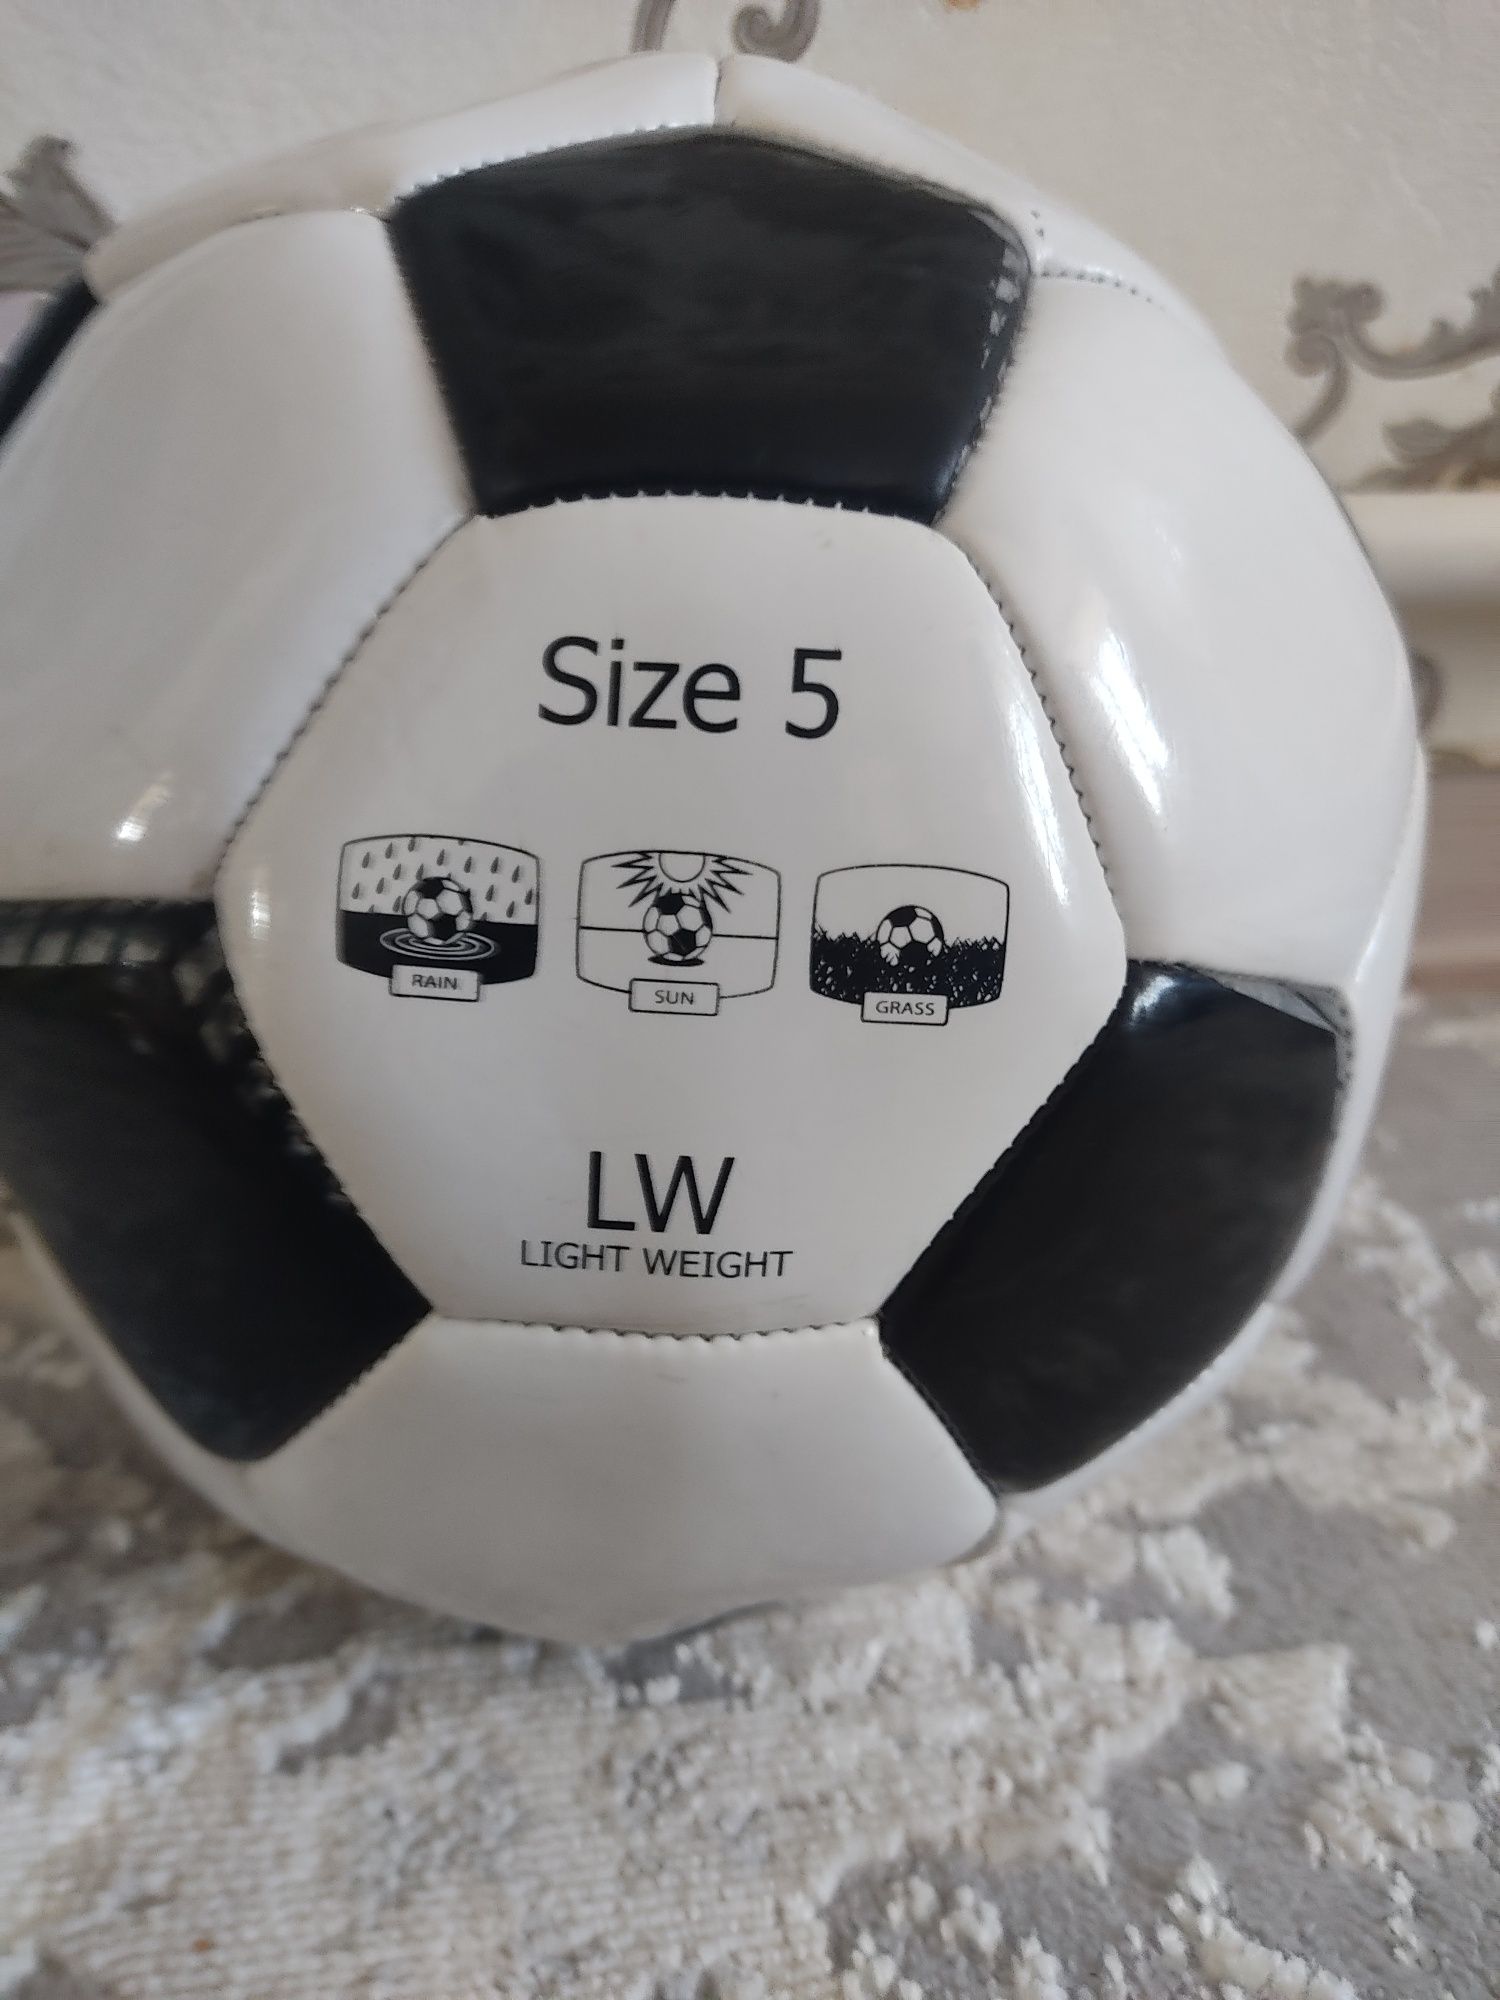 Мяч для футбола новый